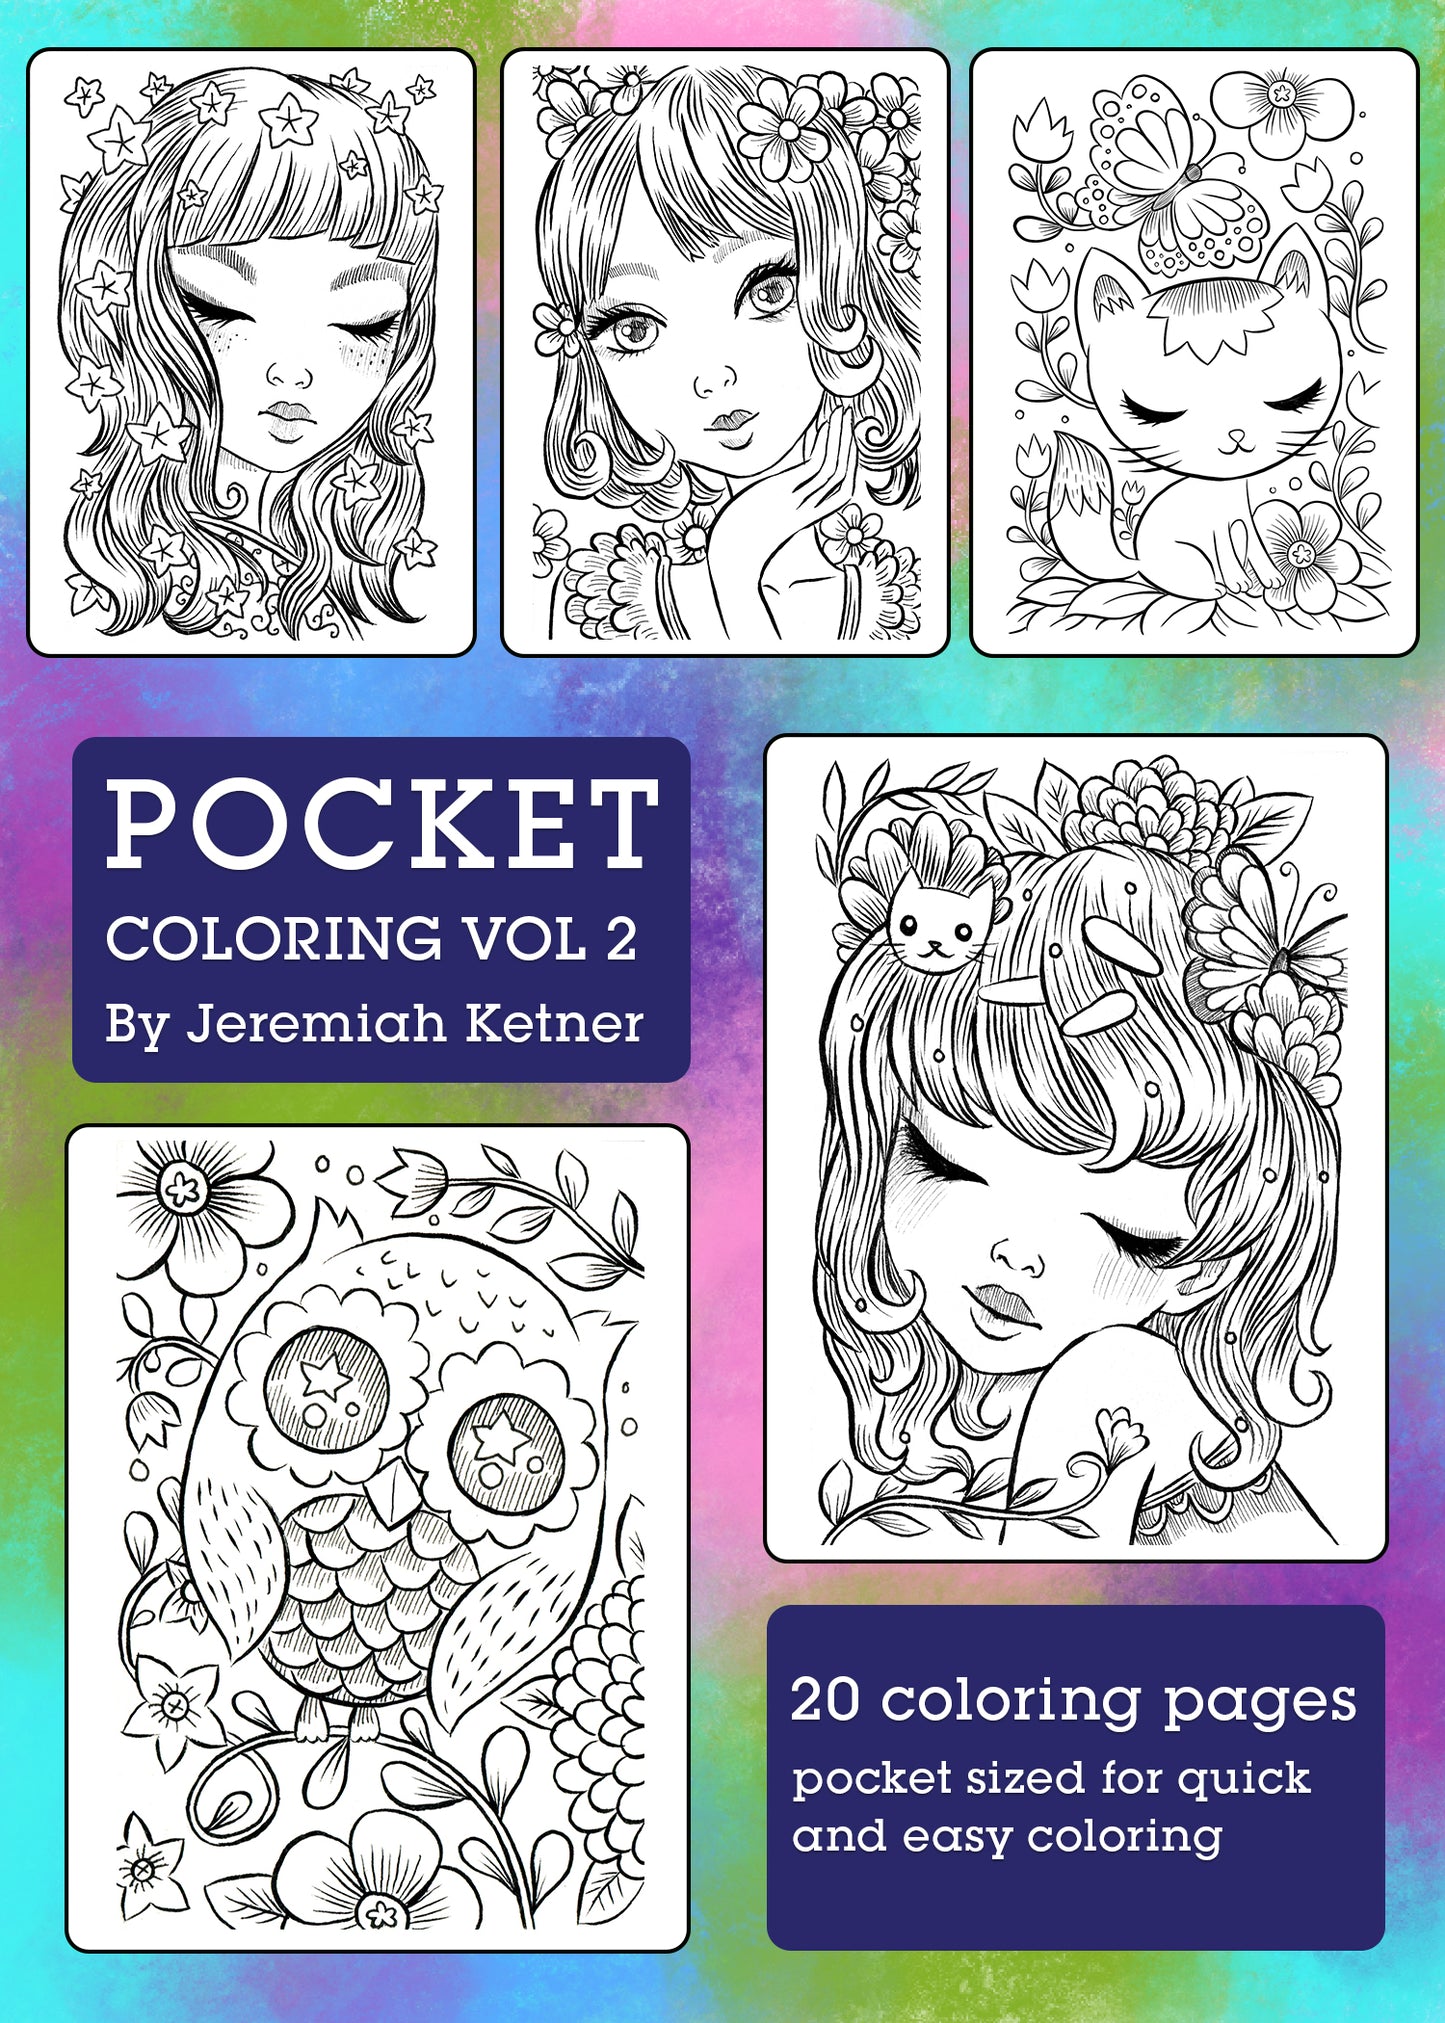 Pocket Coloring Book Vol 2 | Jeremiah Ketner | Instant Download pdf